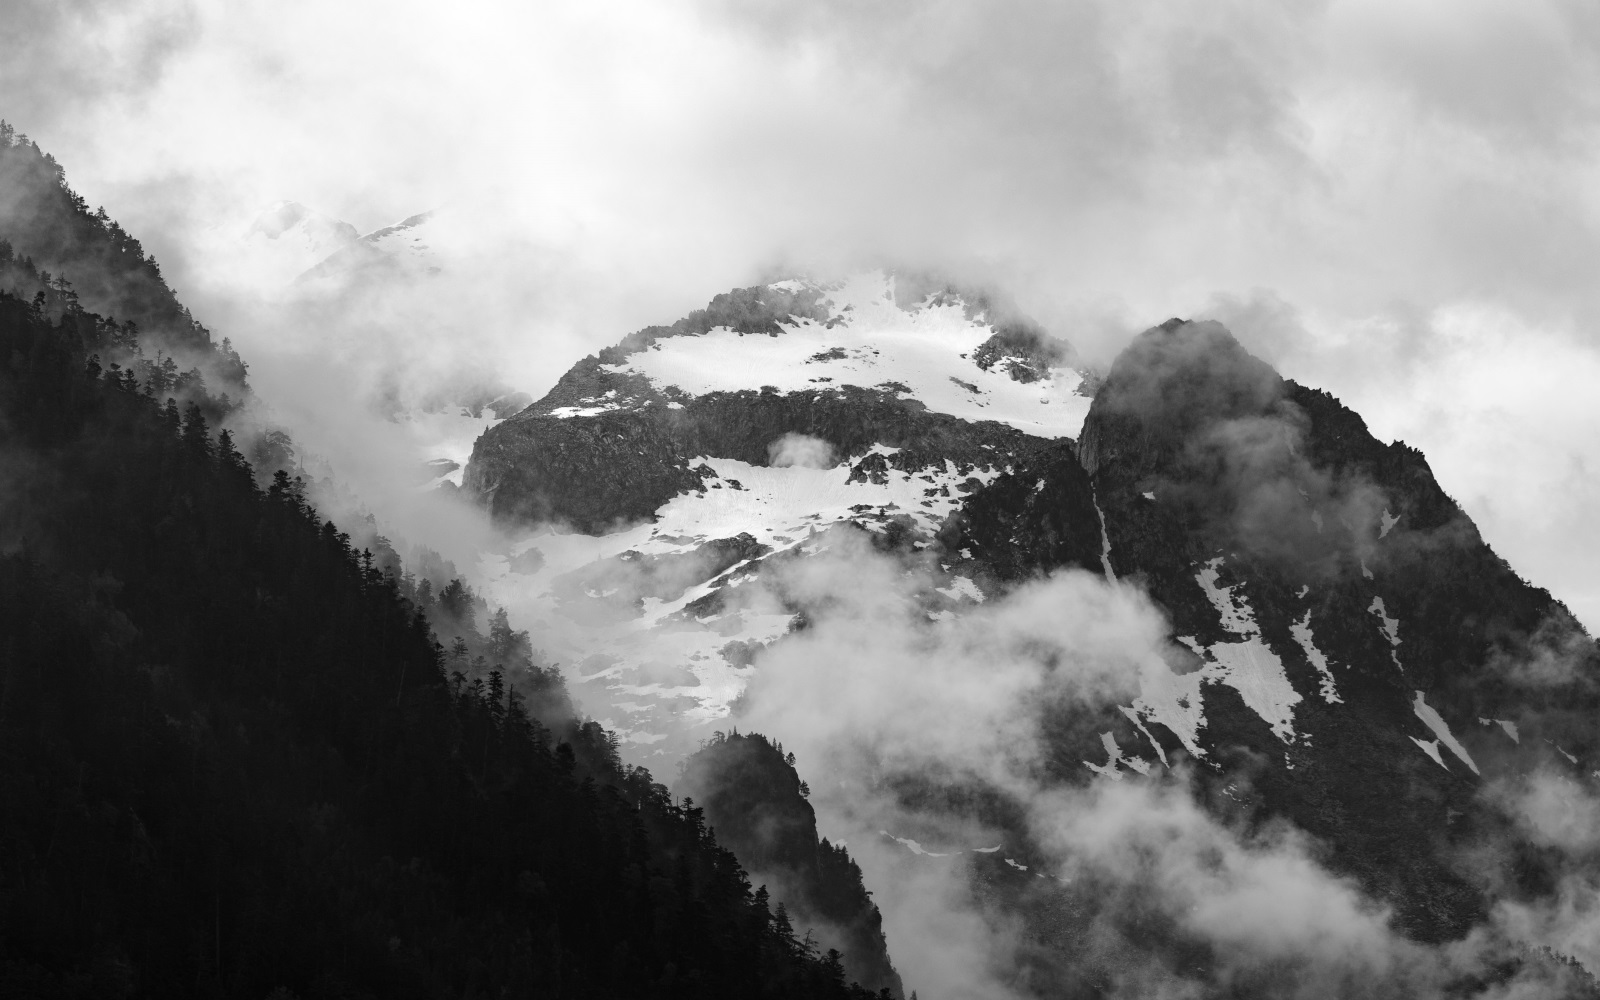 Snow-capped peak photo, Credit: Arseni Mourzenko